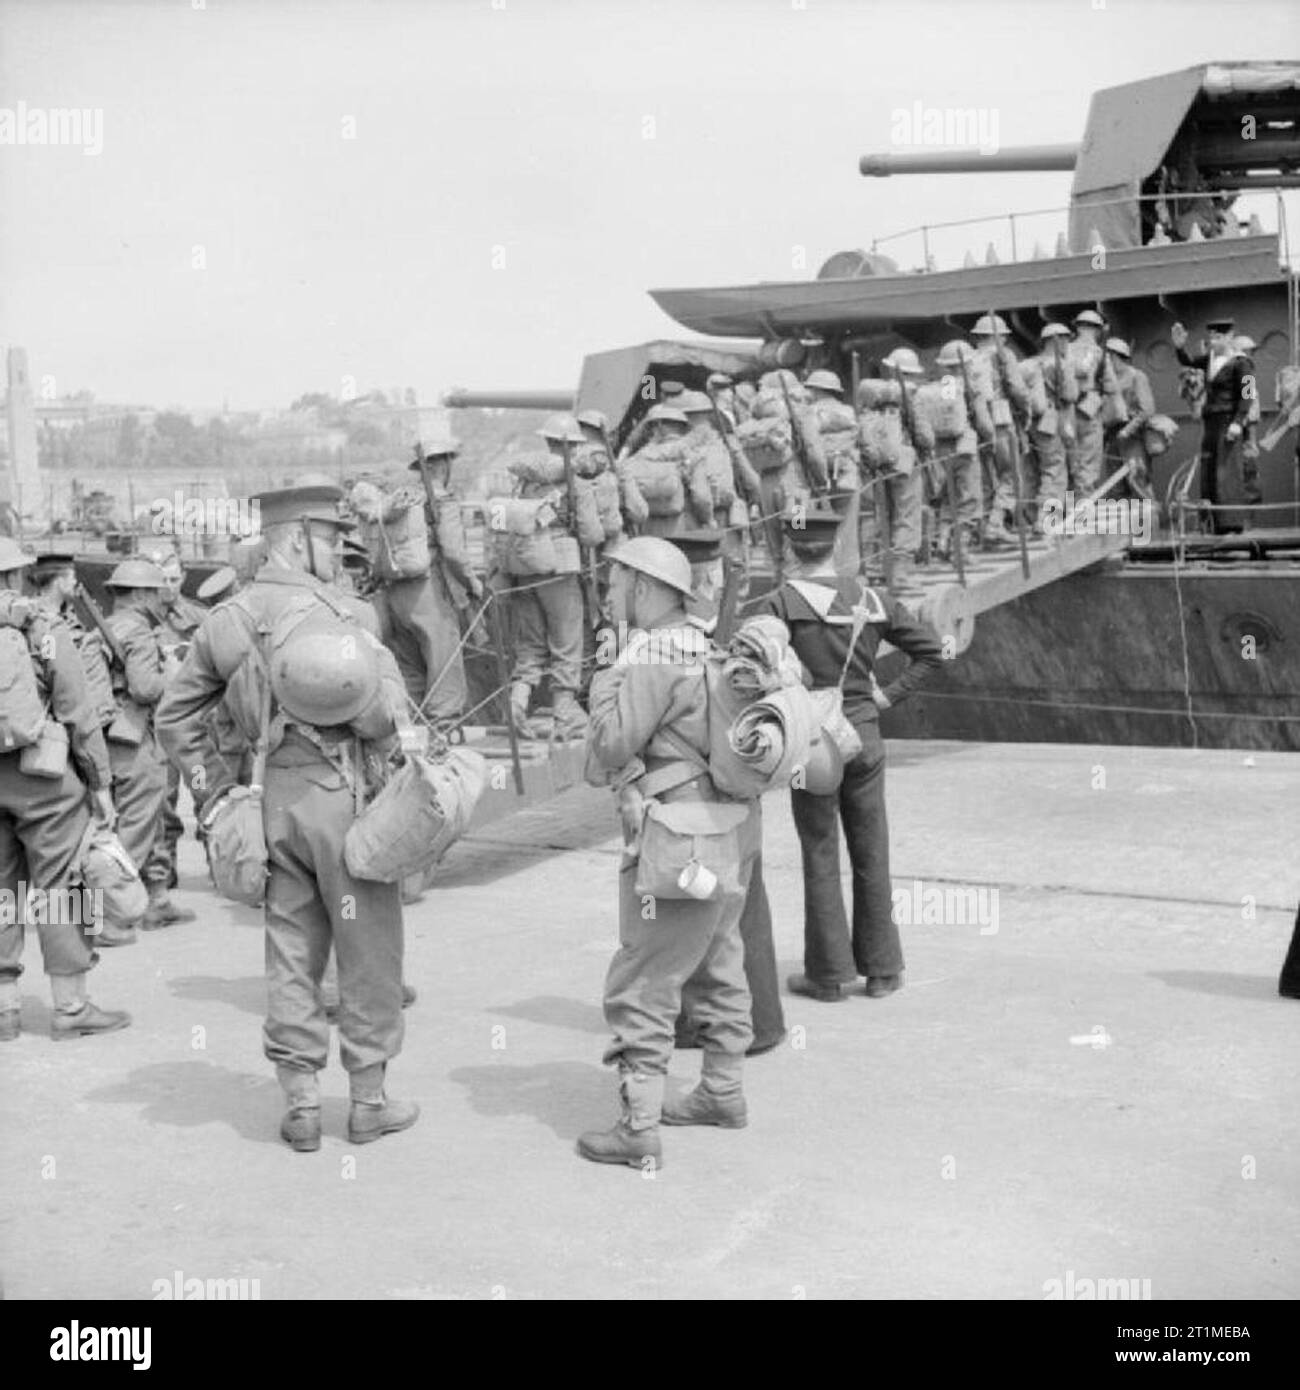 Le Corps expéditionnaire britannique (BEF) en France 1939-1940 l'évacuation de la BEF à partir de la France, juin 1940 : des soldats britanniques à bord d'un destroyer à Brest de revenir au Royaume-Uni. Banque D'Images